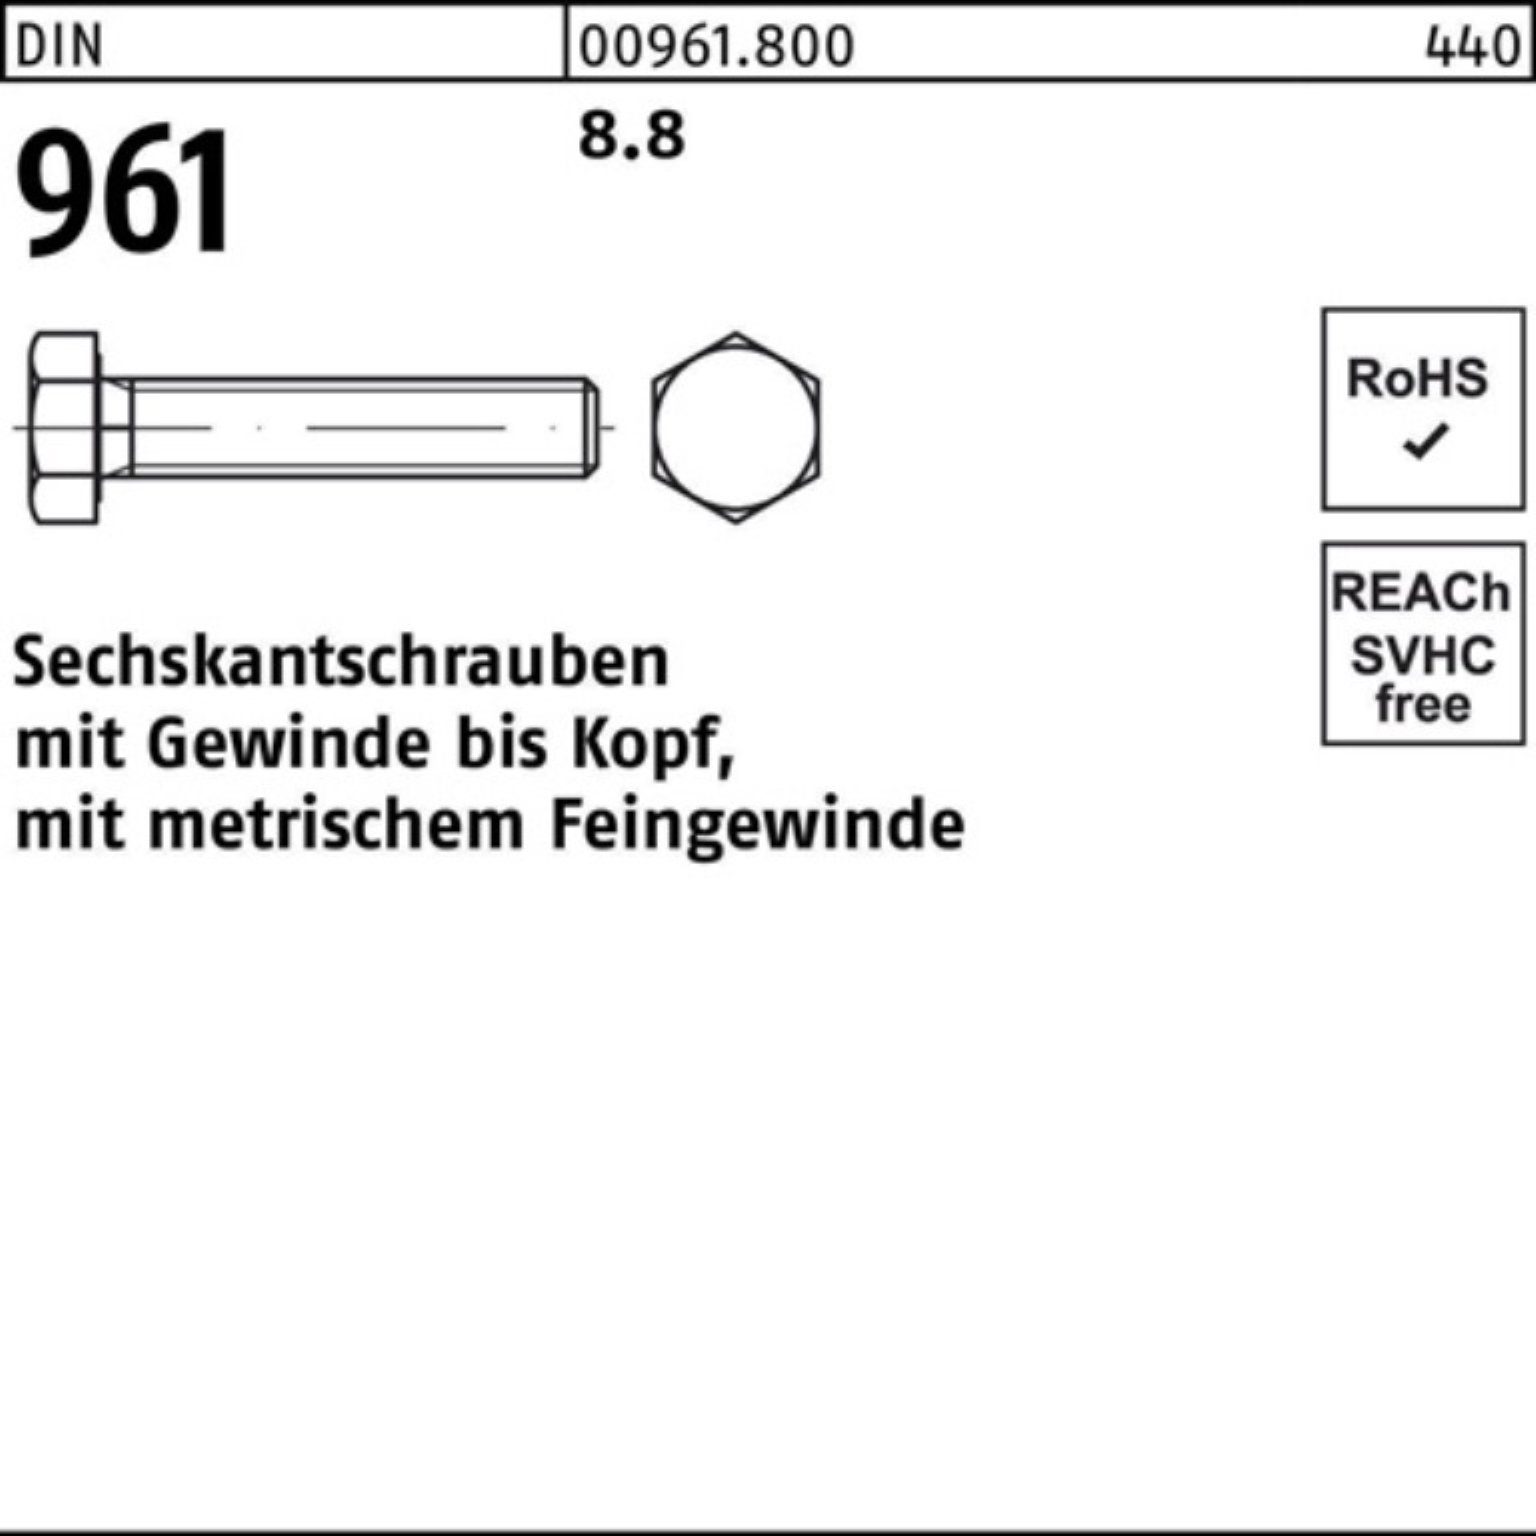 Reyher Sechskantschraube 100er Pack Sechskantschraube DIN 50 90 Stück M12x1,5x VG 8.8 961 DIN